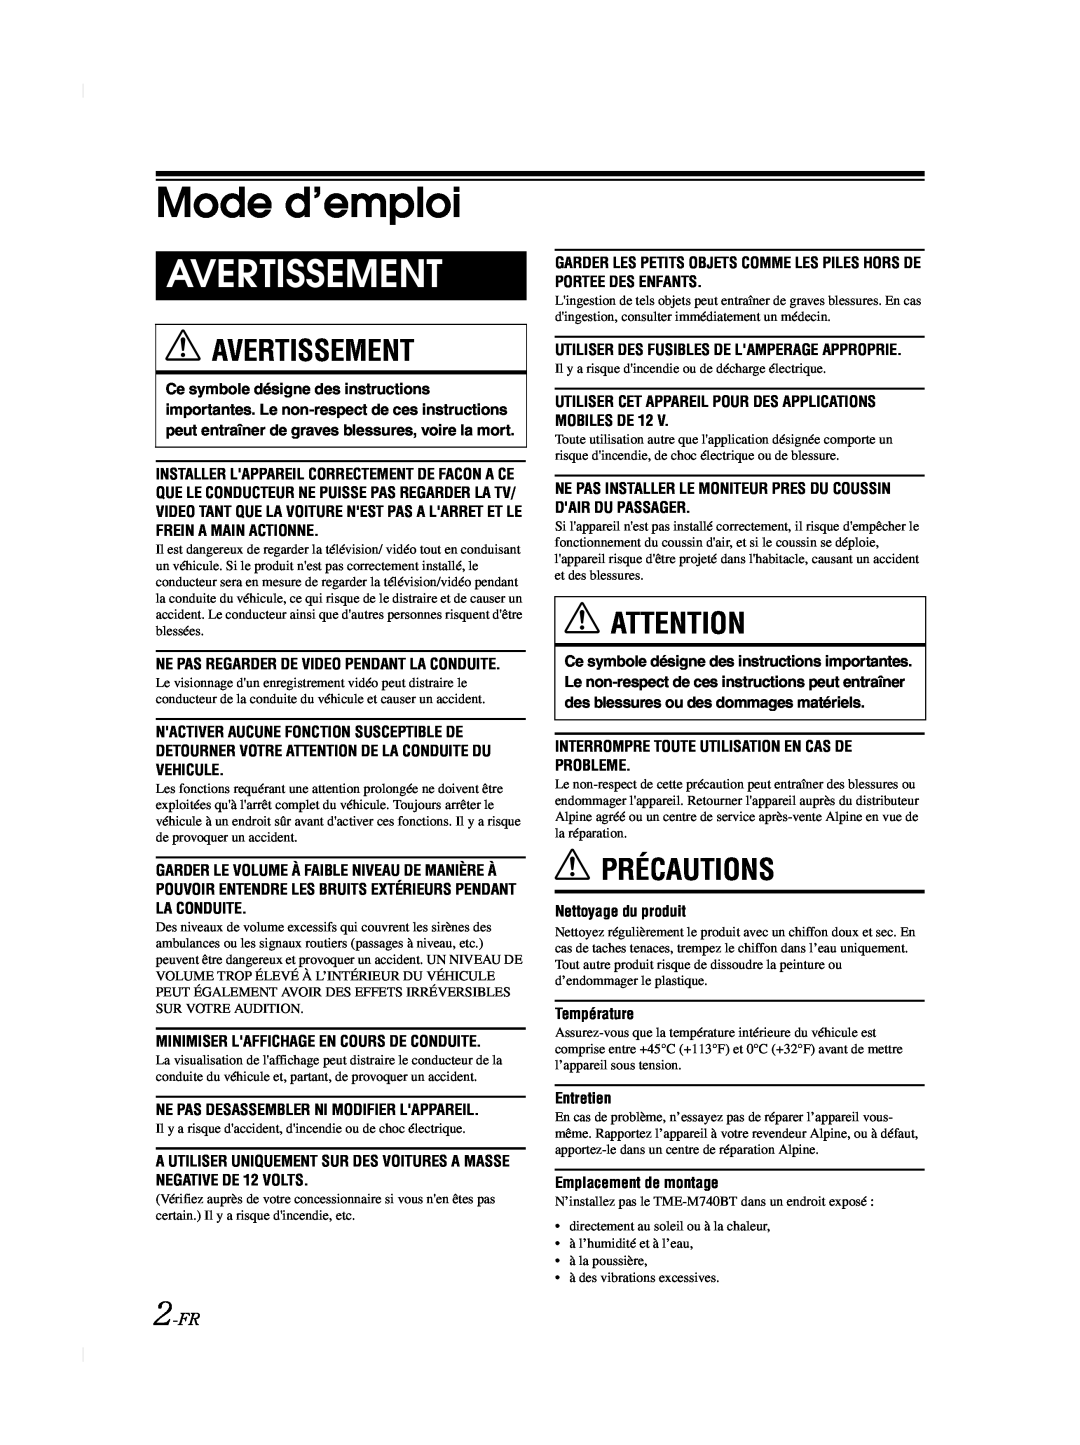 Alpine TME-M740BT owner manual Mode d’emploi, Avertissement, Précautions, 2-FR 